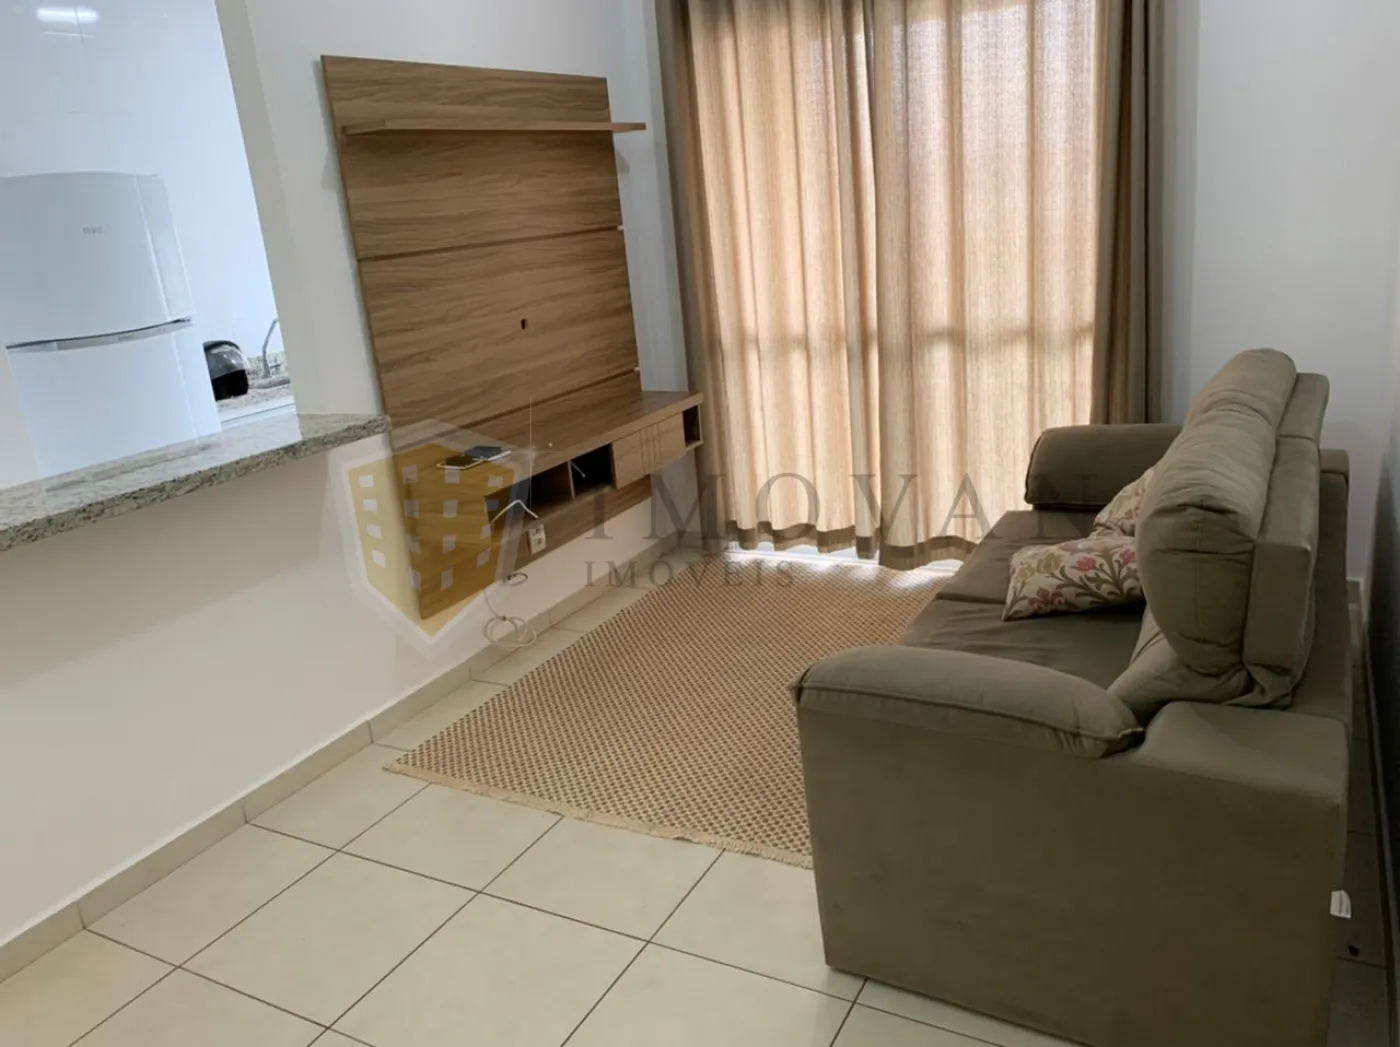 Comprar Apartamento / Padrão em Ribeirão Preto R$ 290.000,00 - Foto 3